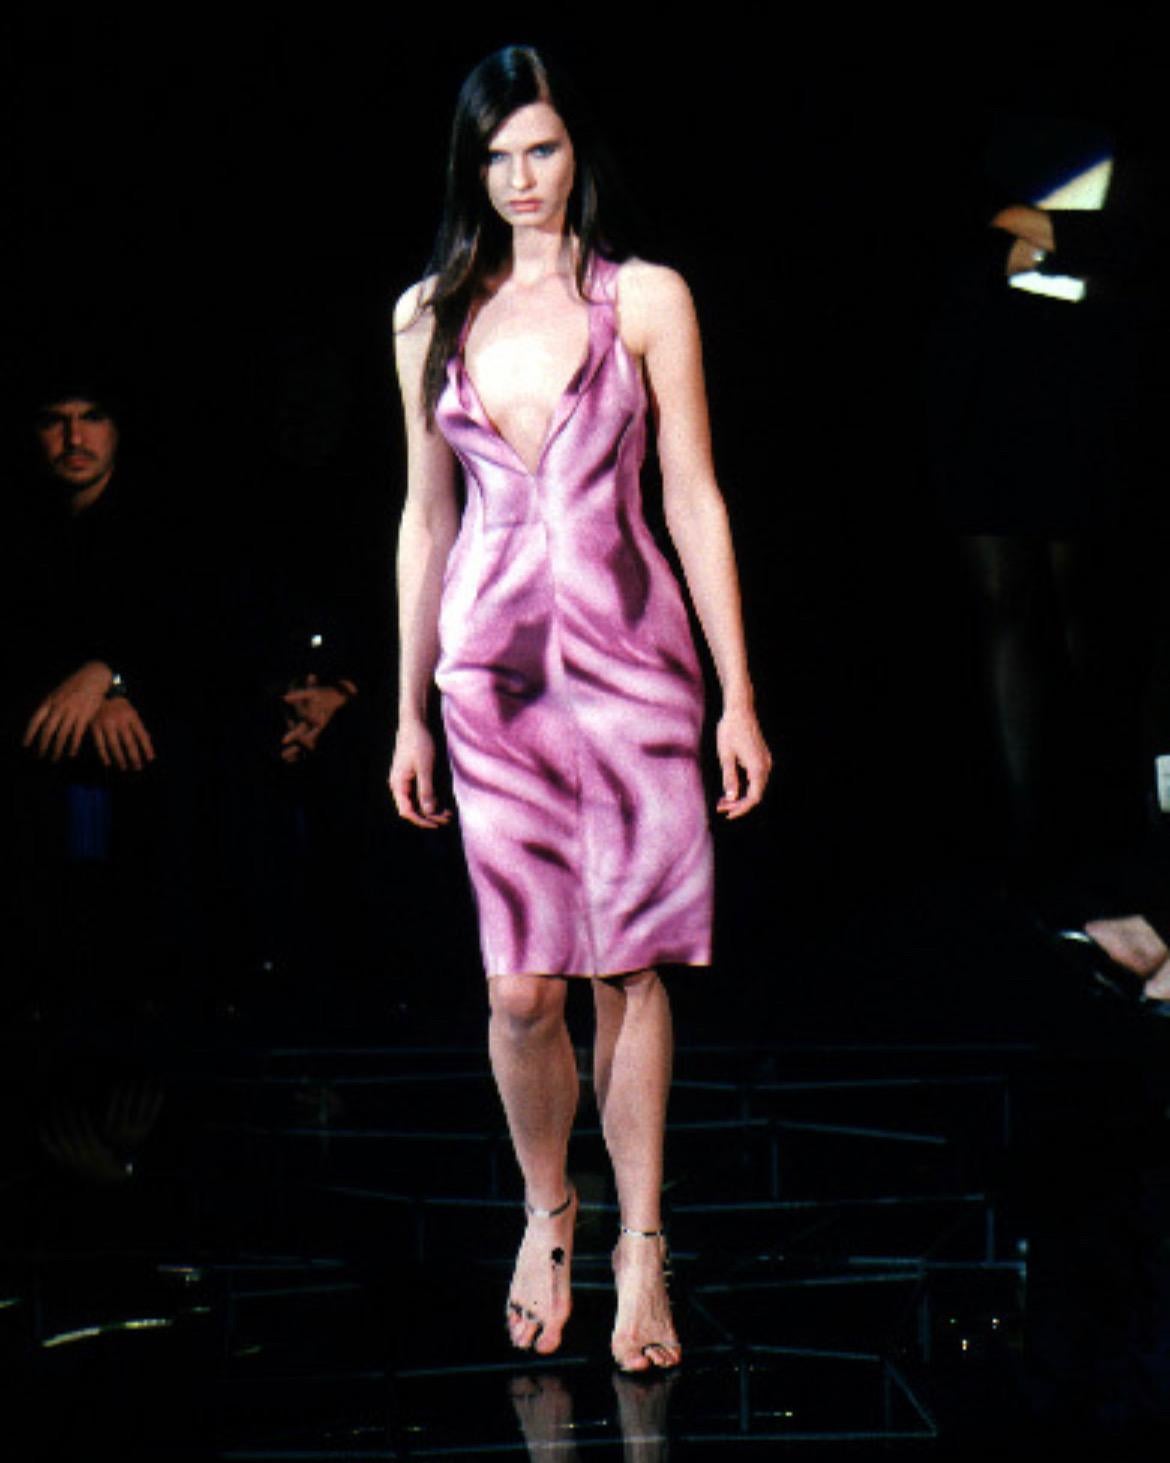 Wir präsentieren ein wunderschönes lilafarbenes, abstraktes Kleid von Gianni Versace, entworfen von Donatella Versace für die Kollektion Frühjahr/Sommer 1999. Dieses Kleid, das erstmals auf dem Laufsteg zu sehen war, zeichnet sich durch einen